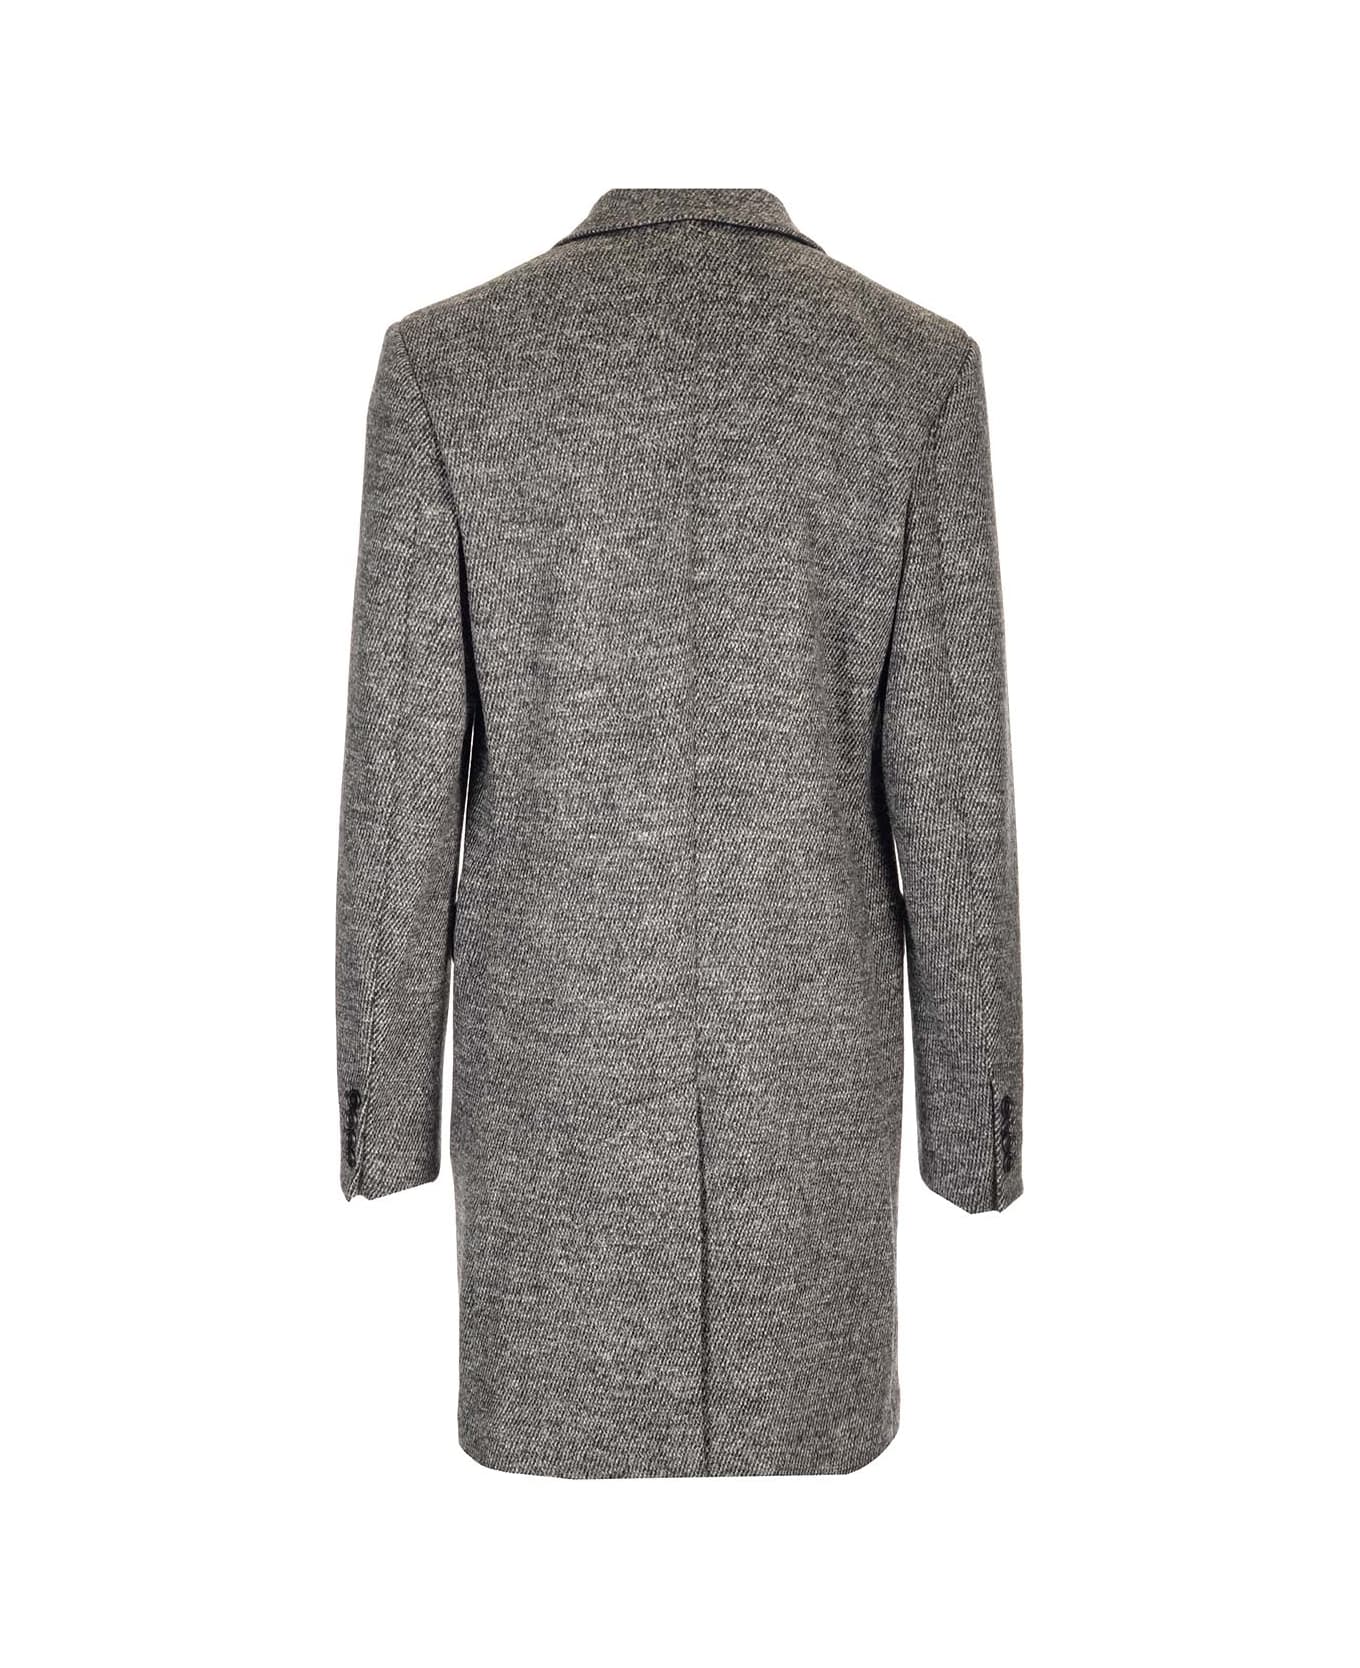 Dolce & Gabbana Wool Coat - grey